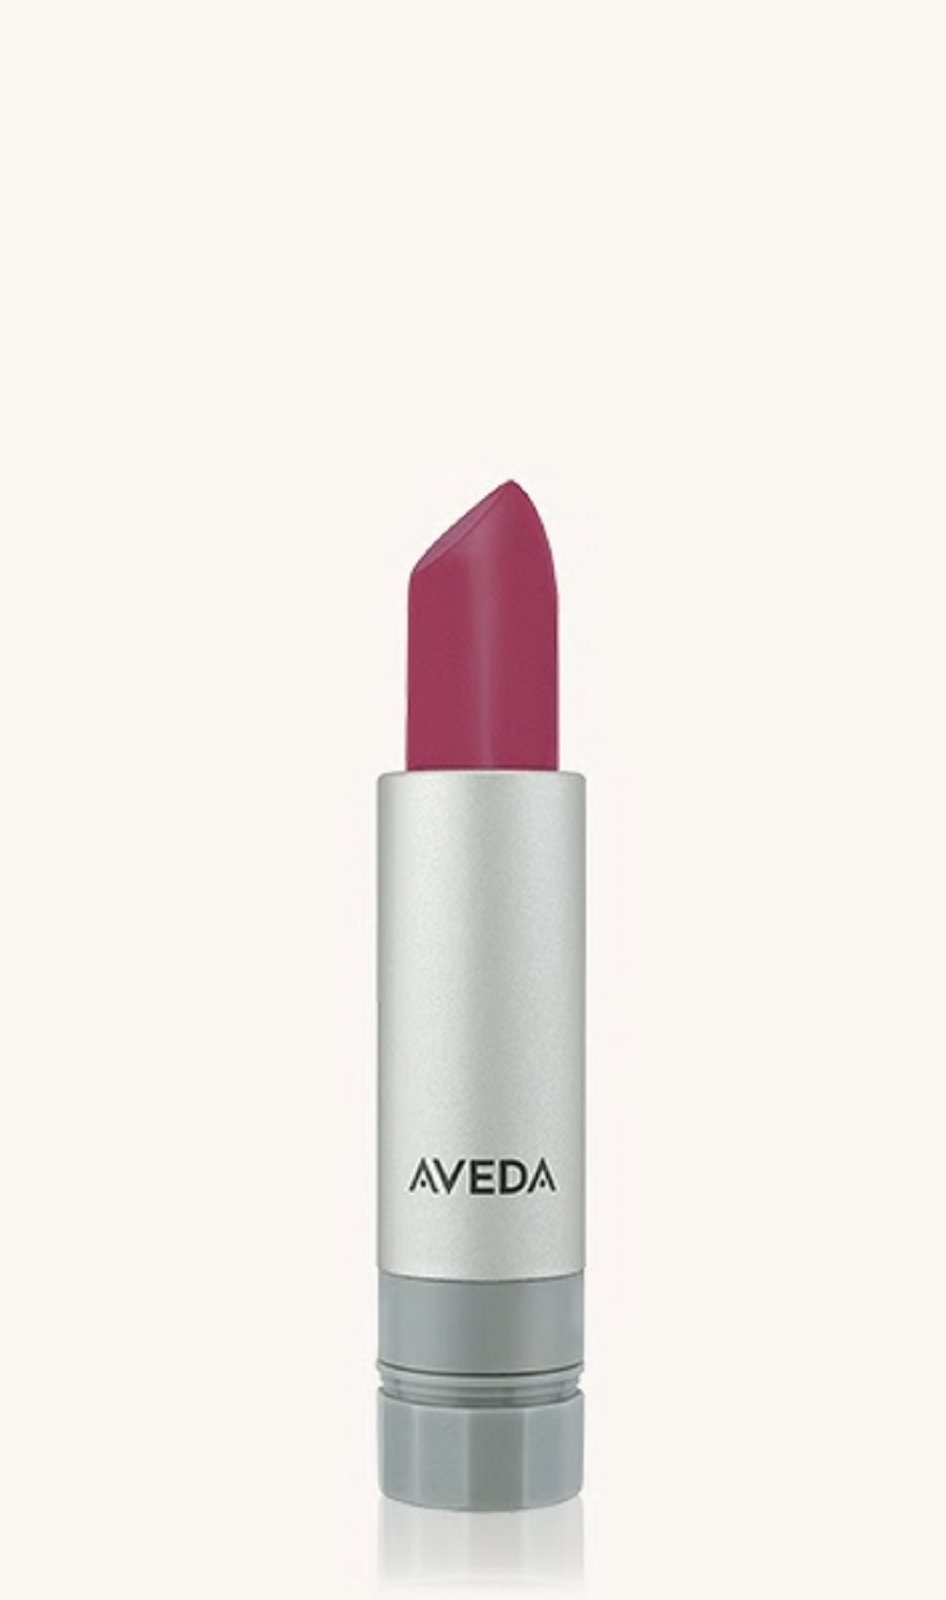 AVEDA new nib lipstick lip color RARE ORCHID 909  Nourish-Mint discontinued